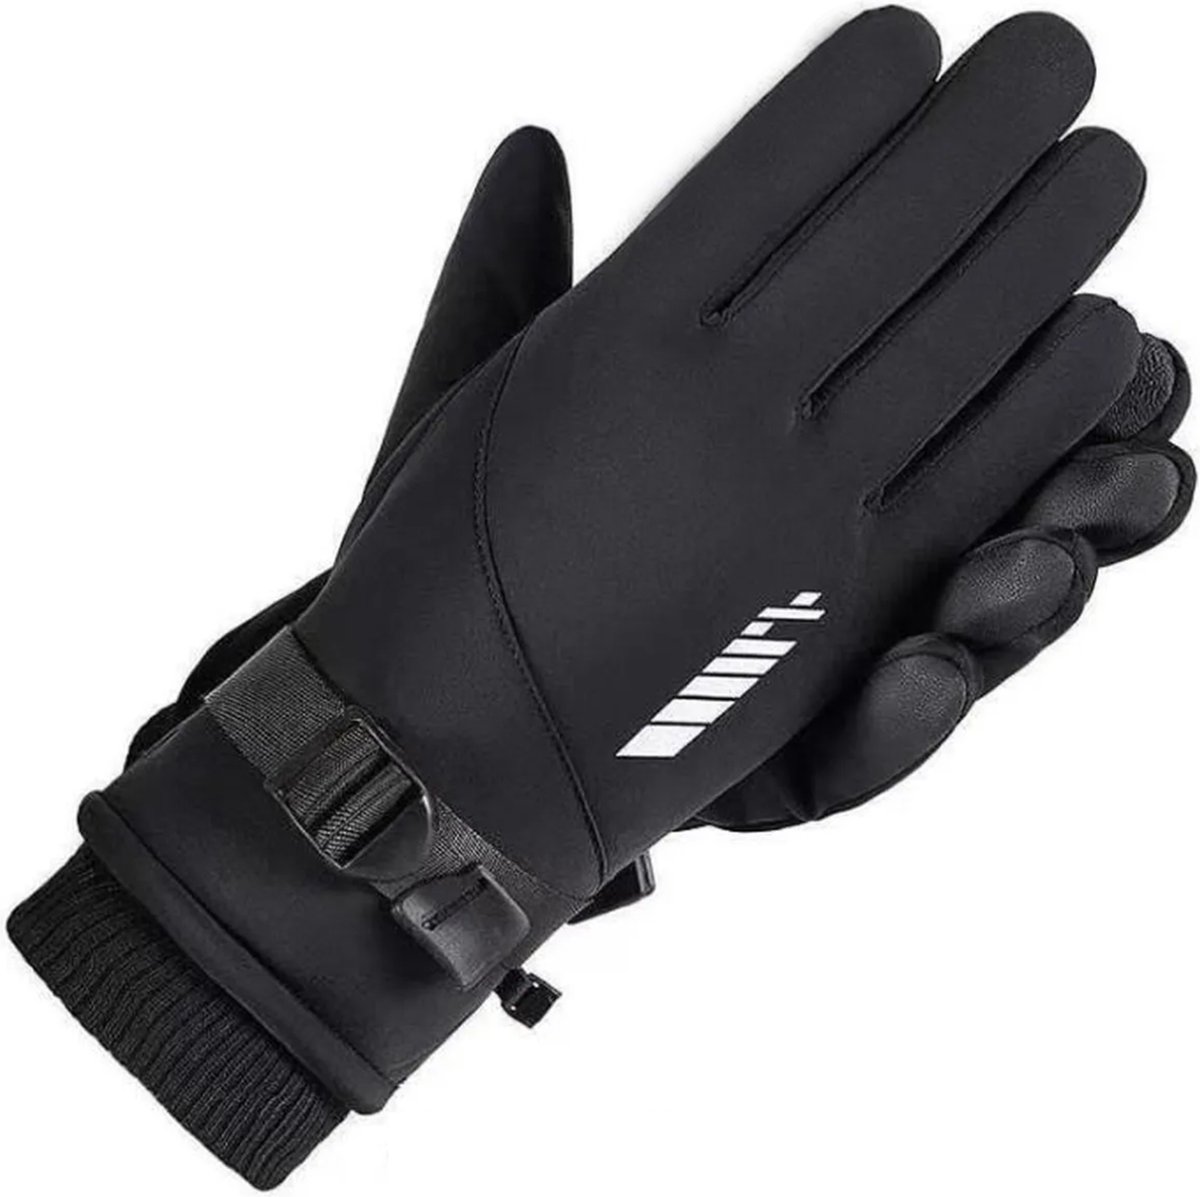 BOTC Fietshandschoenen - Windproof/Waterproof - Handschoenen Met Touchscreen - Maat S/M - Zwart